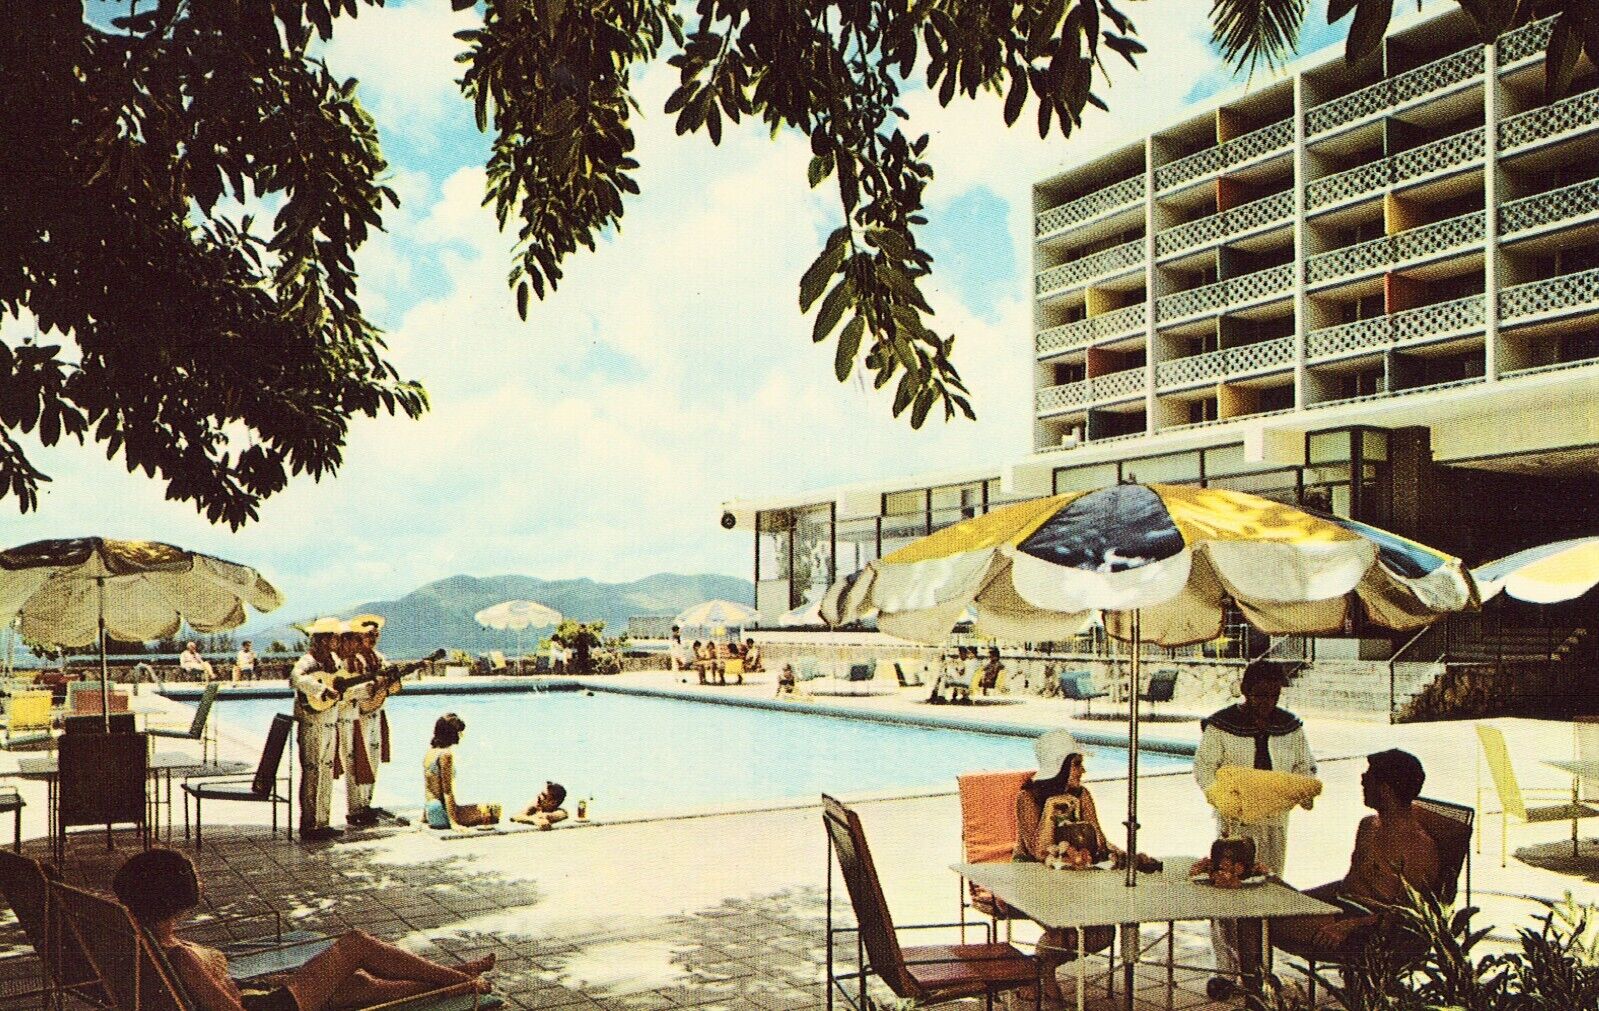 Hotel El Salvador - San Salvador - Vintage Postcard